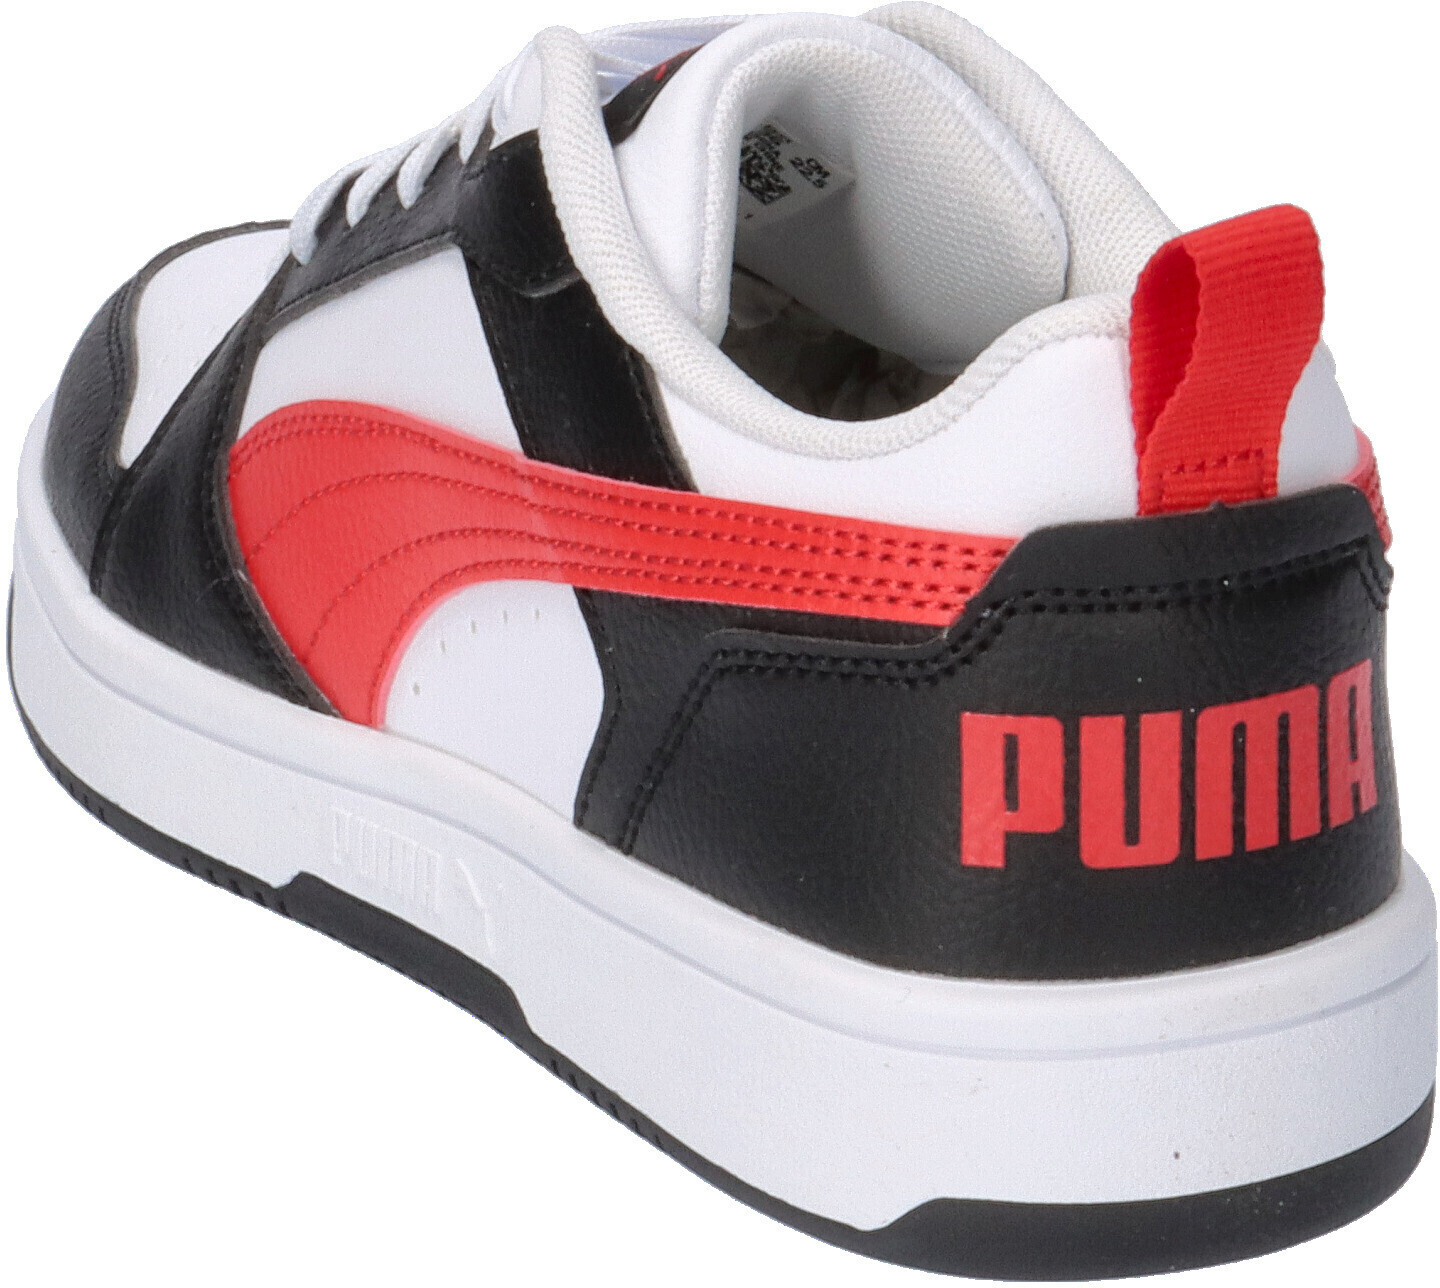 time black 28,99 Rebound bei V6 white/for Puma € | red/puma (393833) Preisvergleich ab all puma Lo